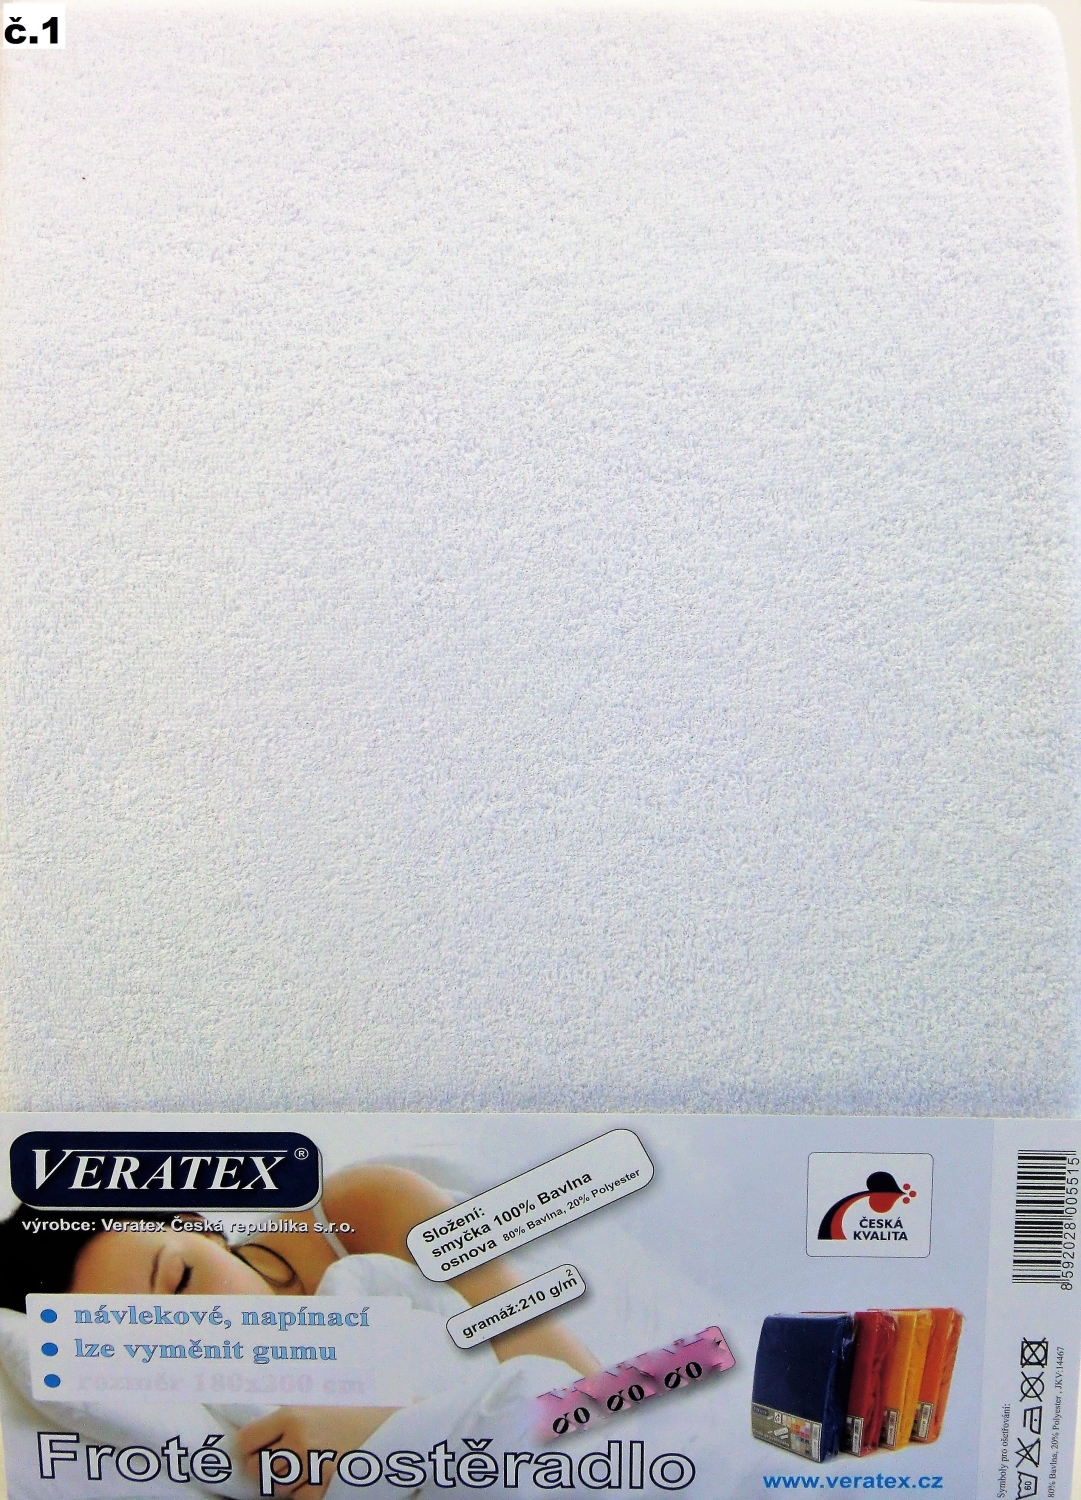 Veratex Froté prostěradlo 80 x 160 cm (č. 1-bílá) 80 x 160 cm